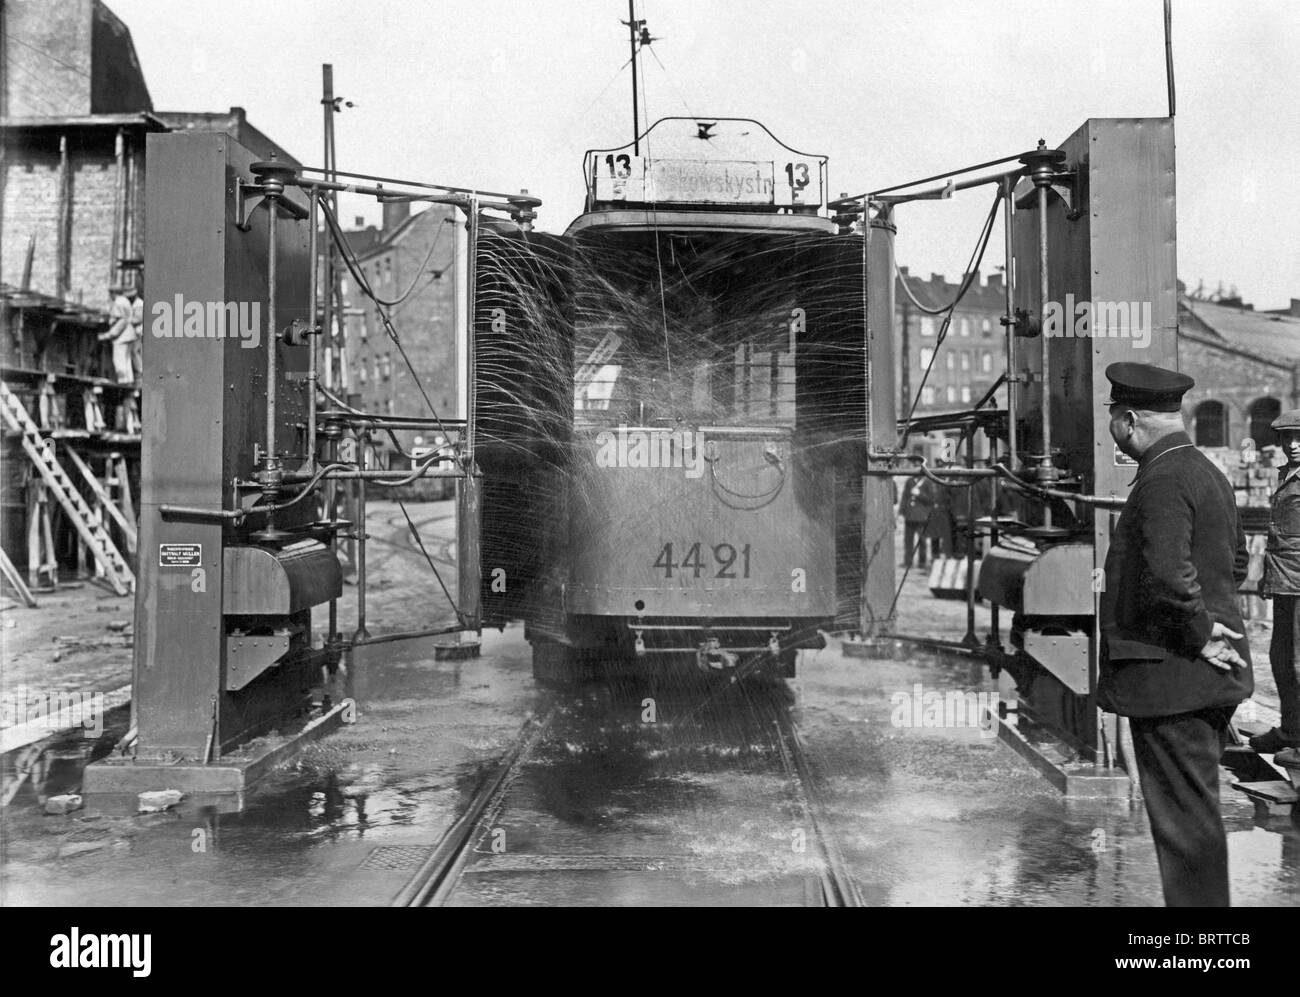 Waschanlage für Straßenbahnen, Geschichtsbild, 1925, Berlin, Deutschland, Europa Stockfoto